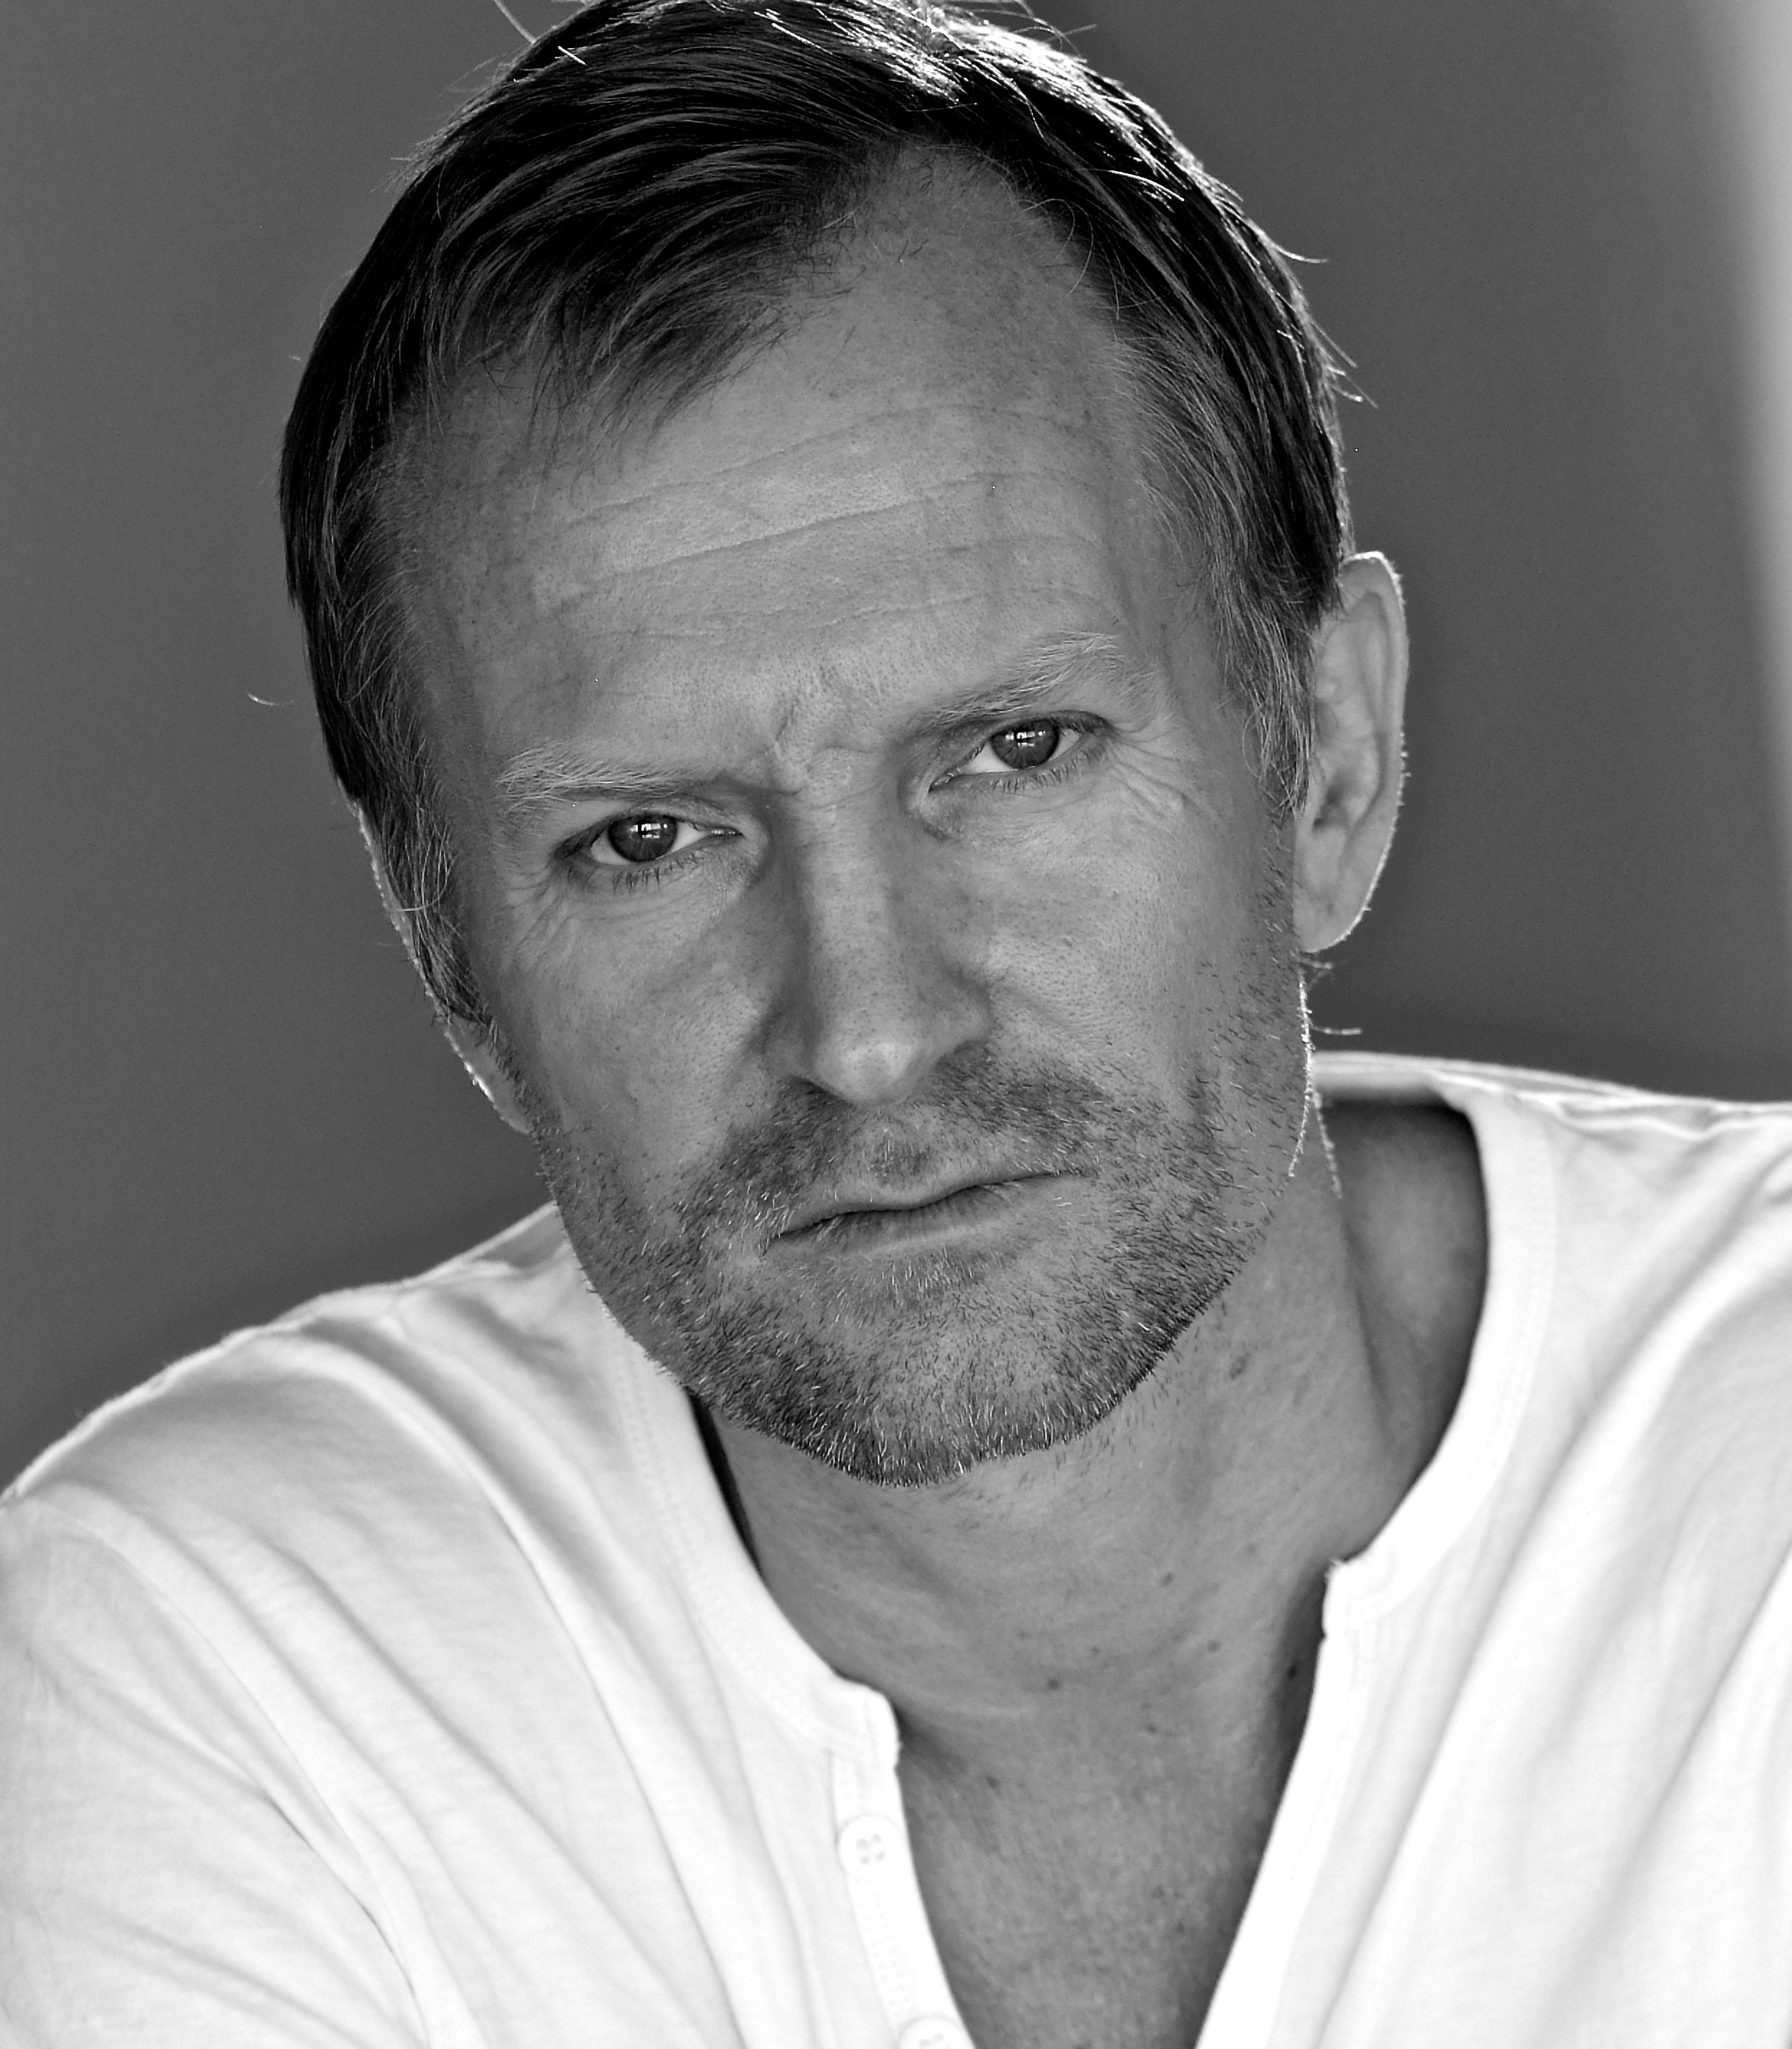 Ulrich Thomsen